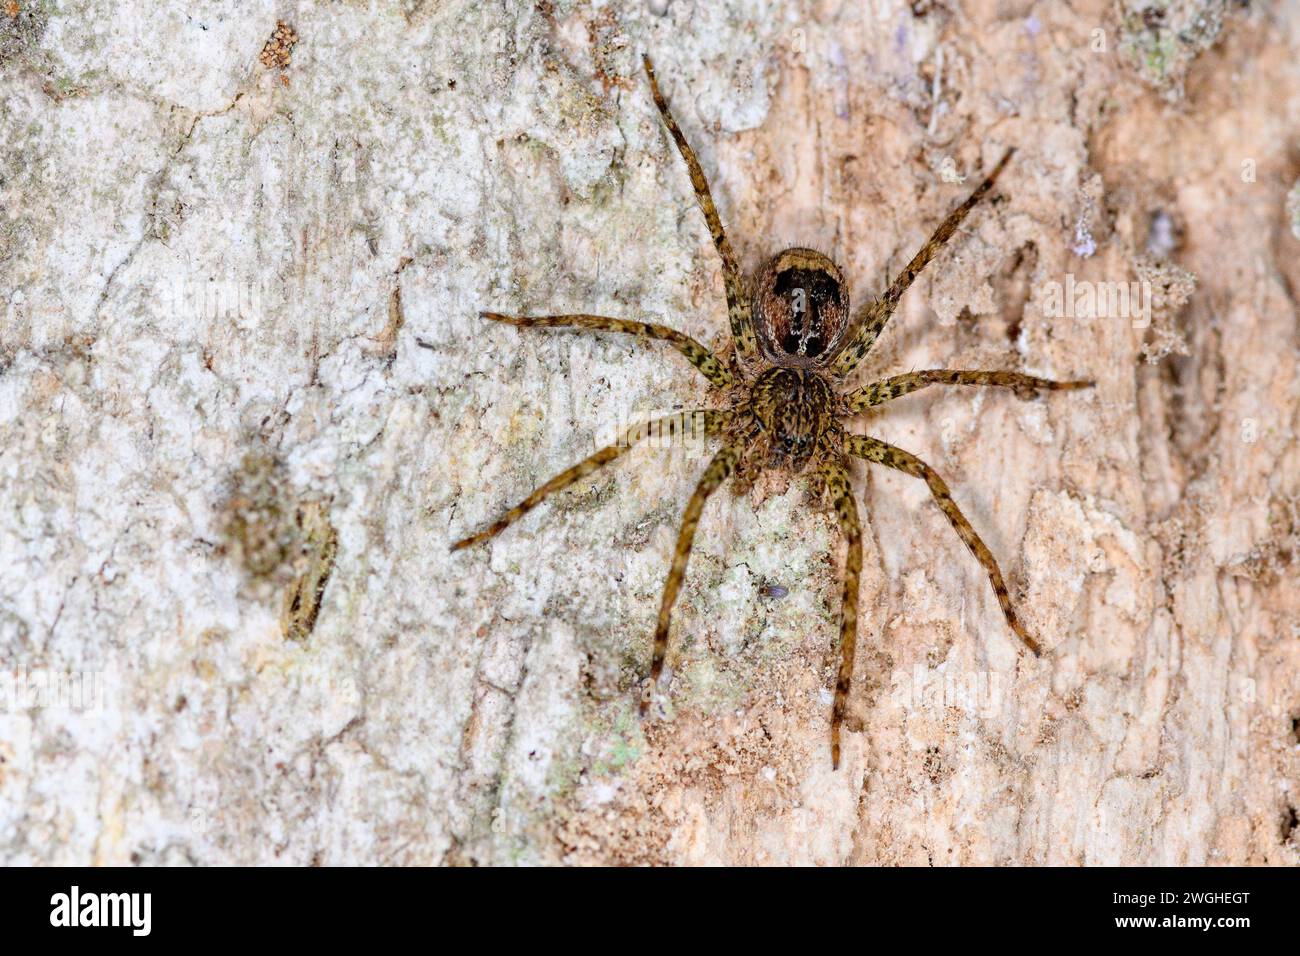 Araignée chasseuse non identifiée (famille Sparassidae?) De la forêt nuageuse de Bosque de Paz, Costa Rica. Banque D'Images